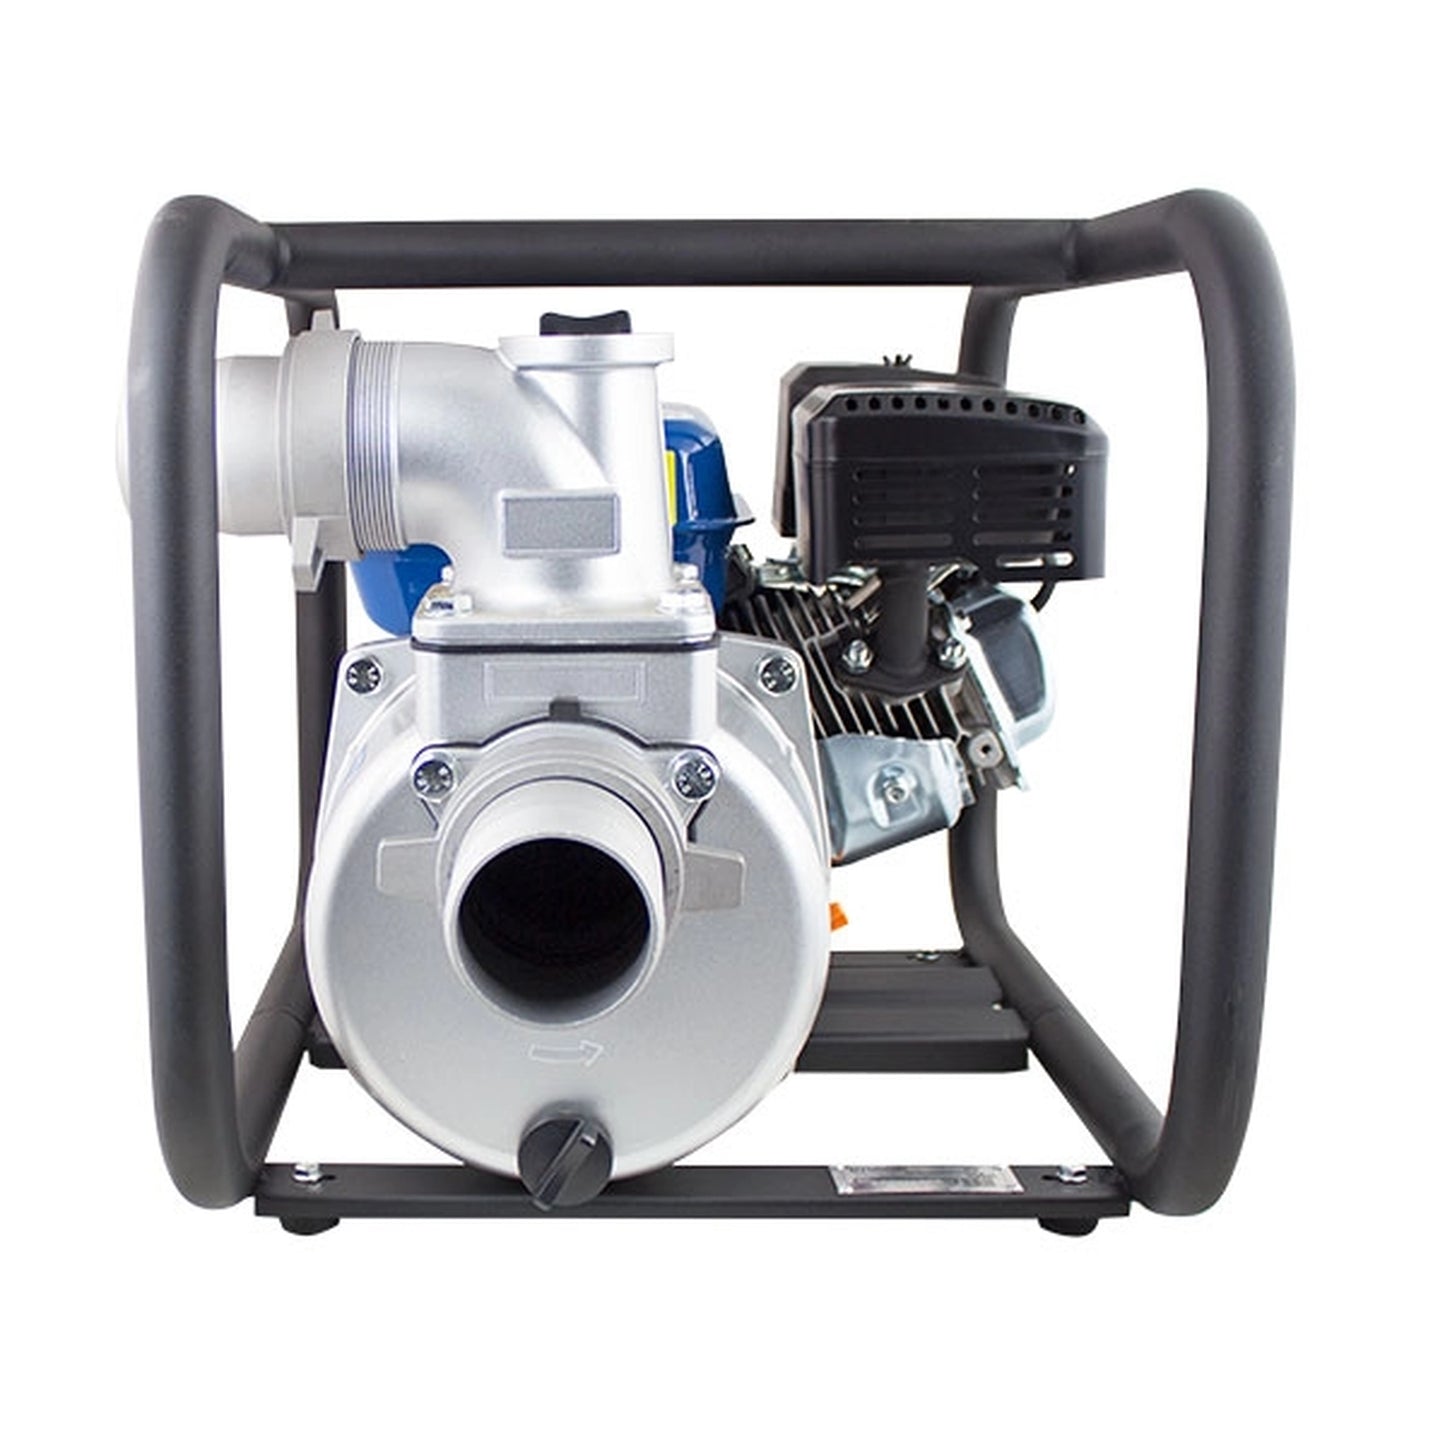 Hyundai HY80 Professional Petrol Water Pump 212cc 6.5hp